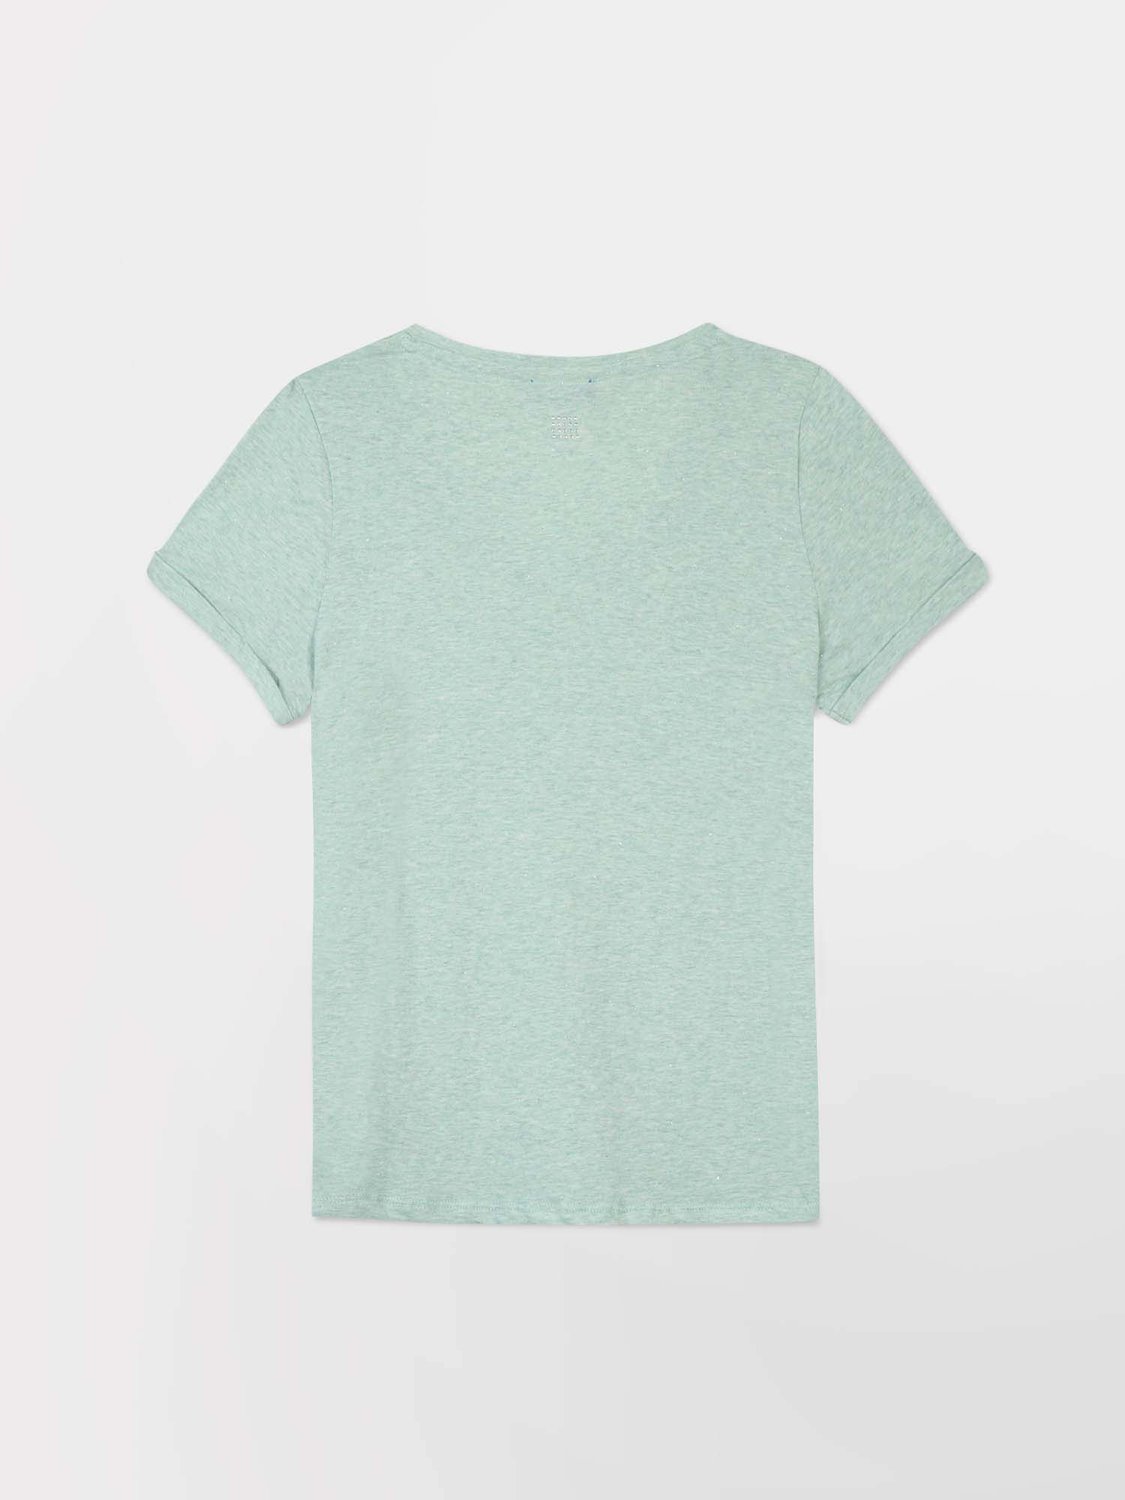 Tee-Shirt Femme Col V Jersey Coton Vert Clair